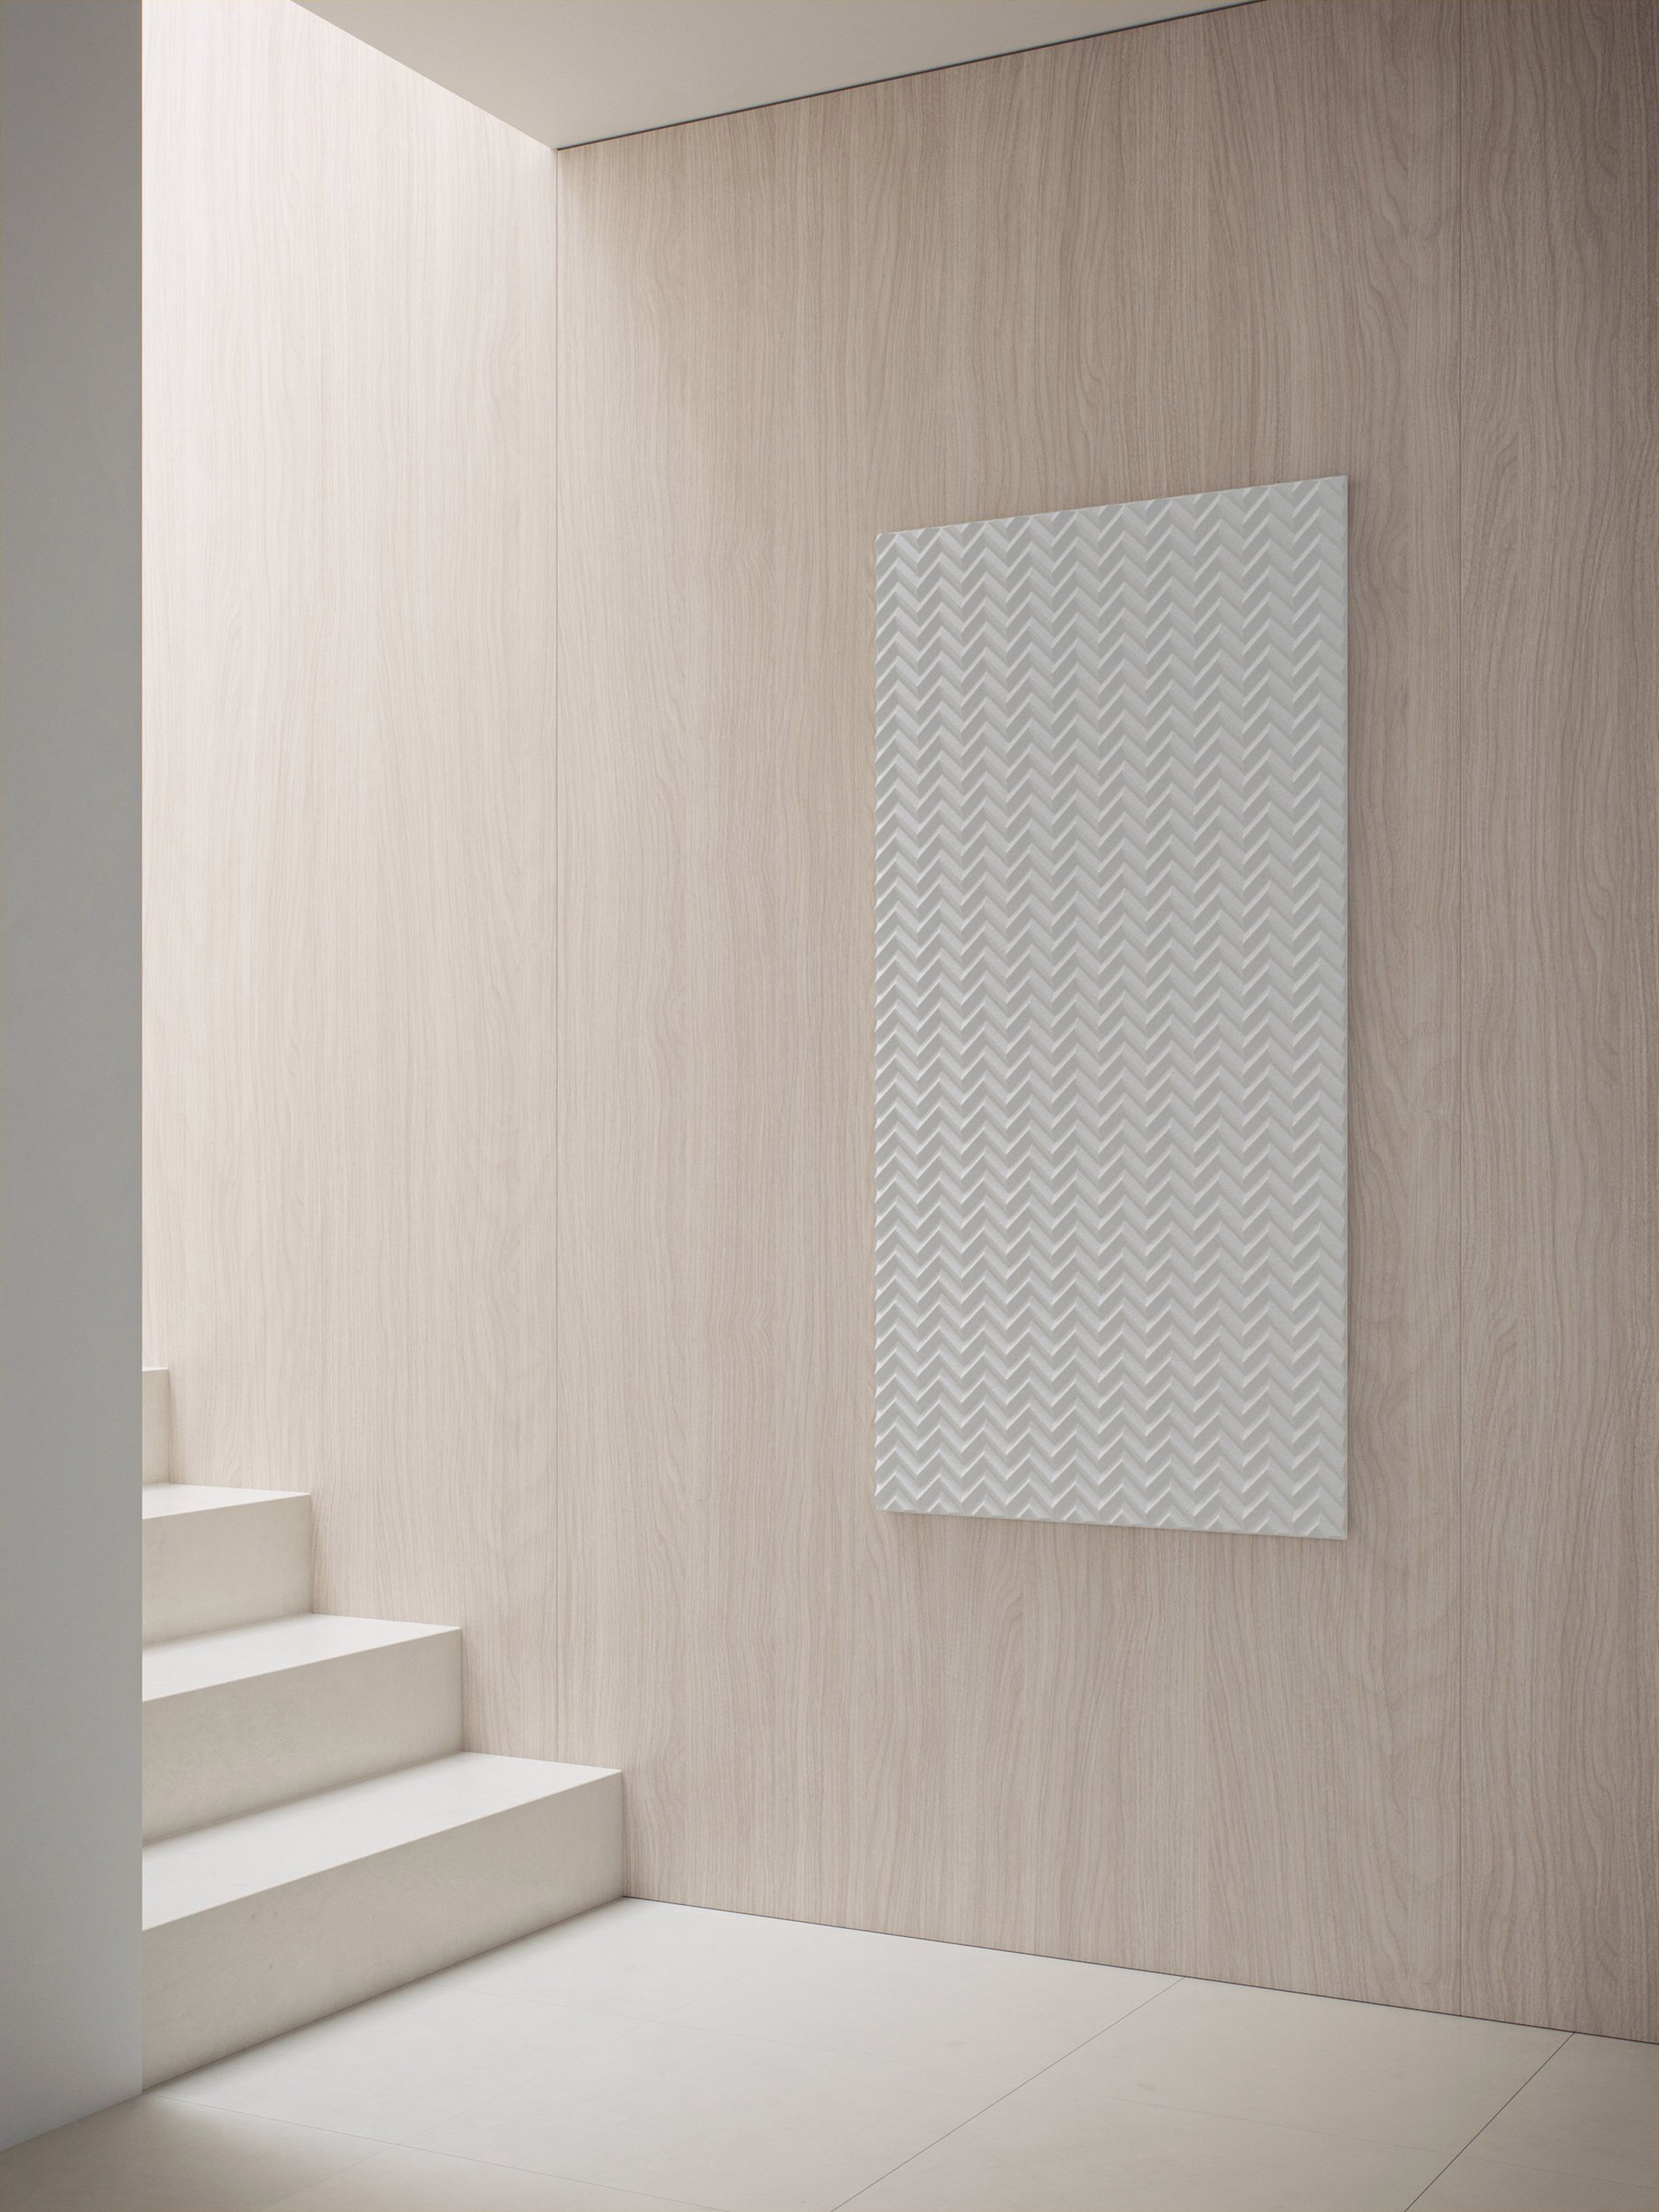 Baux Acoustic Pulp biodegradable wall panels